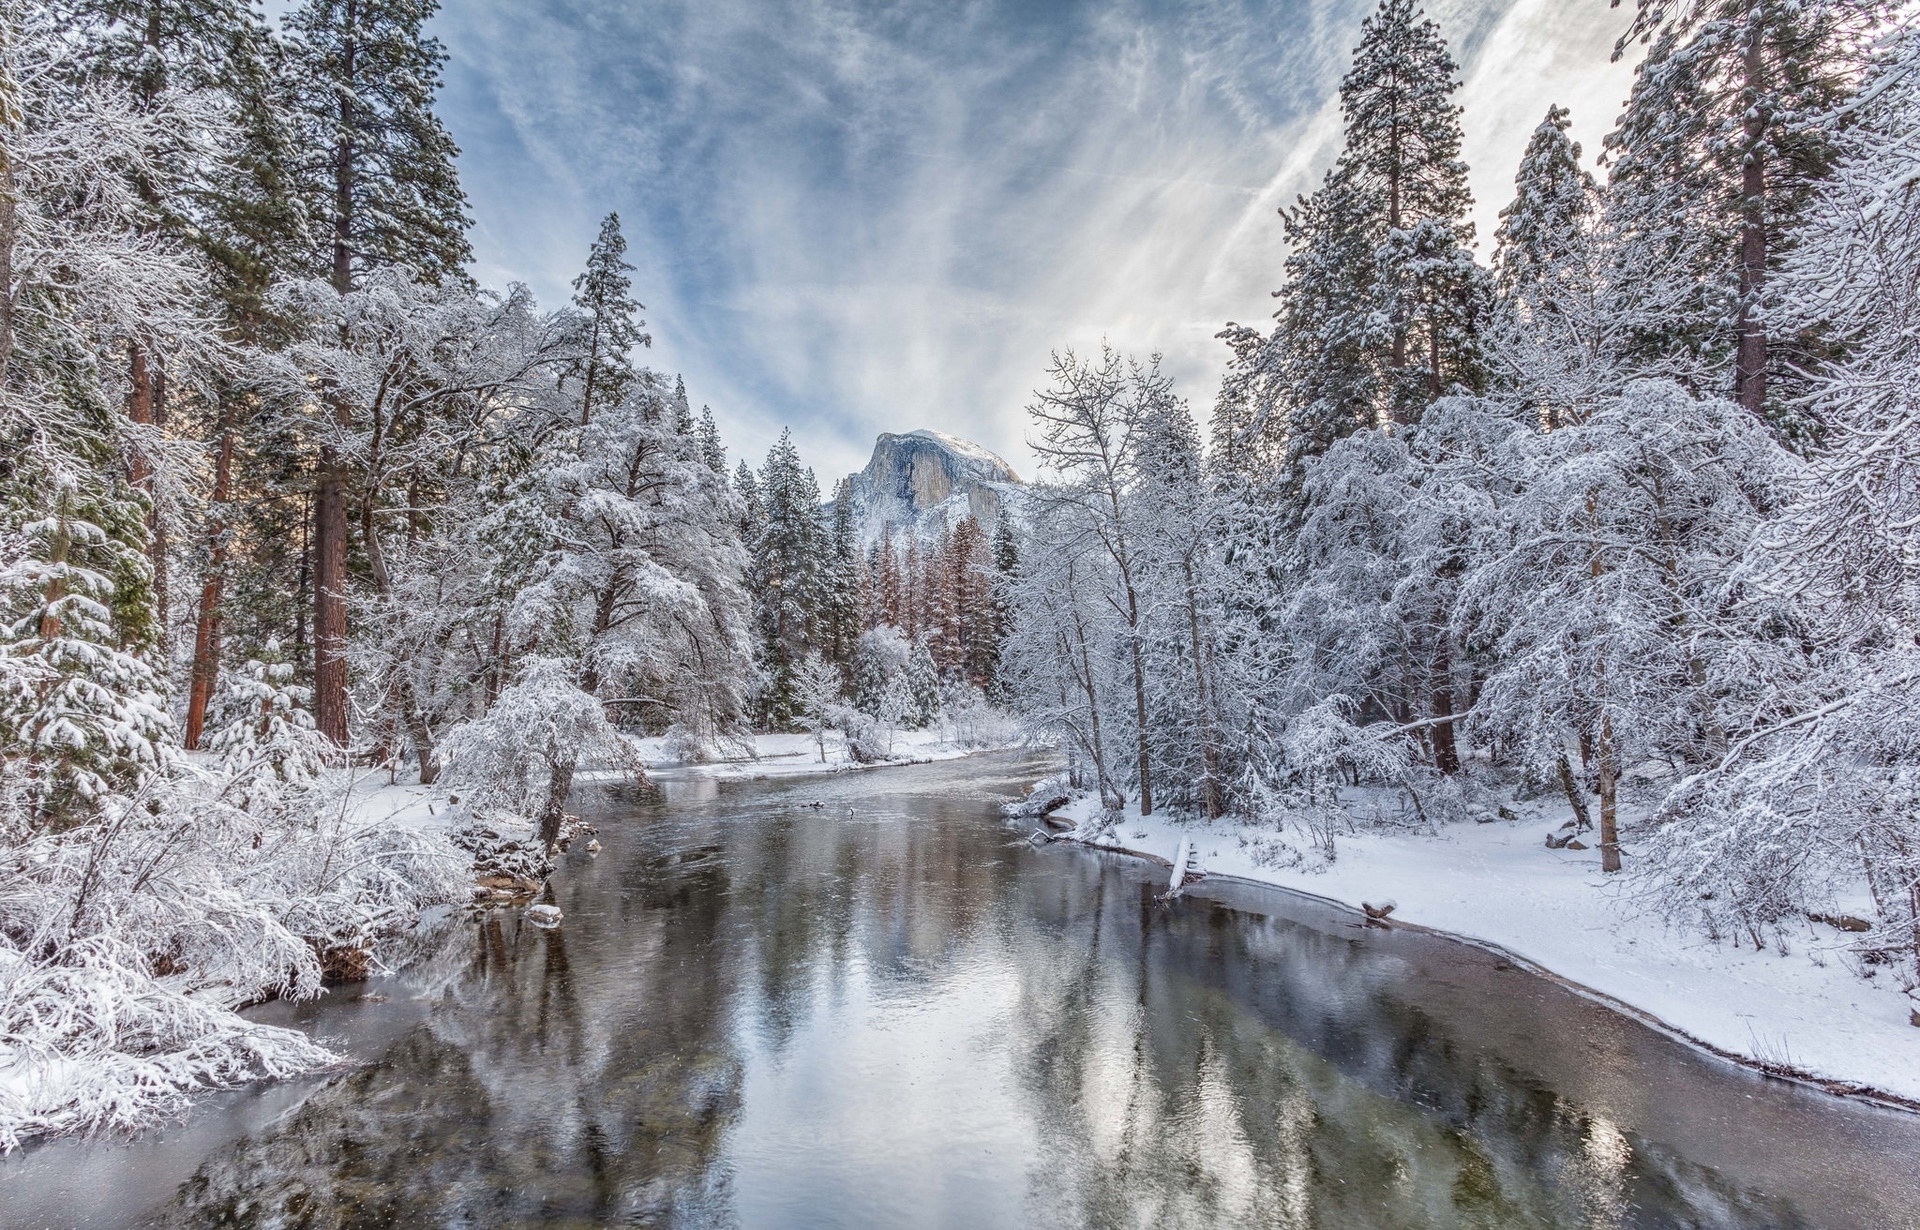 Park Narodowy Yosemite, Rzeka Merced River, Góry, Śnieg, Drzewa, Lasy, Chmury, Szron, Zima, Kalifornia, Stany Zjednoczone